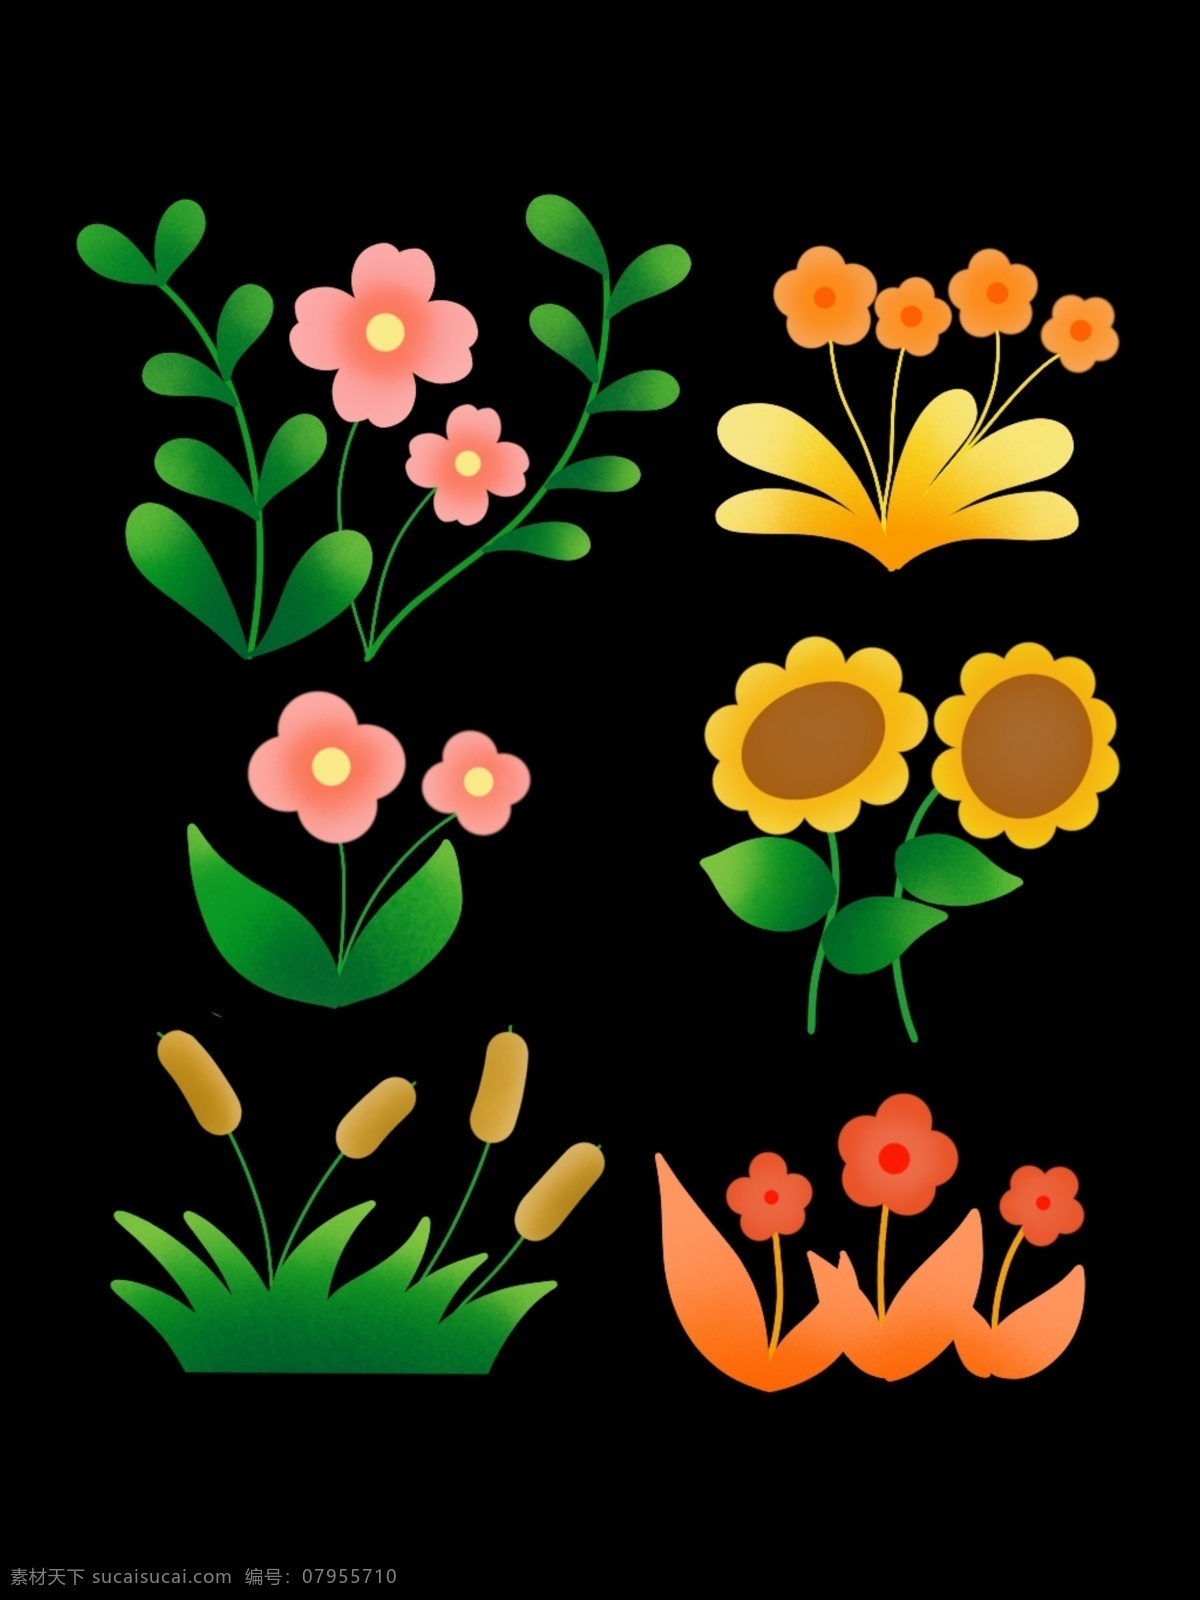 鲜花元素图片 小花 鲜花 花元素 鲜花元素 向日葵 花花 06元素